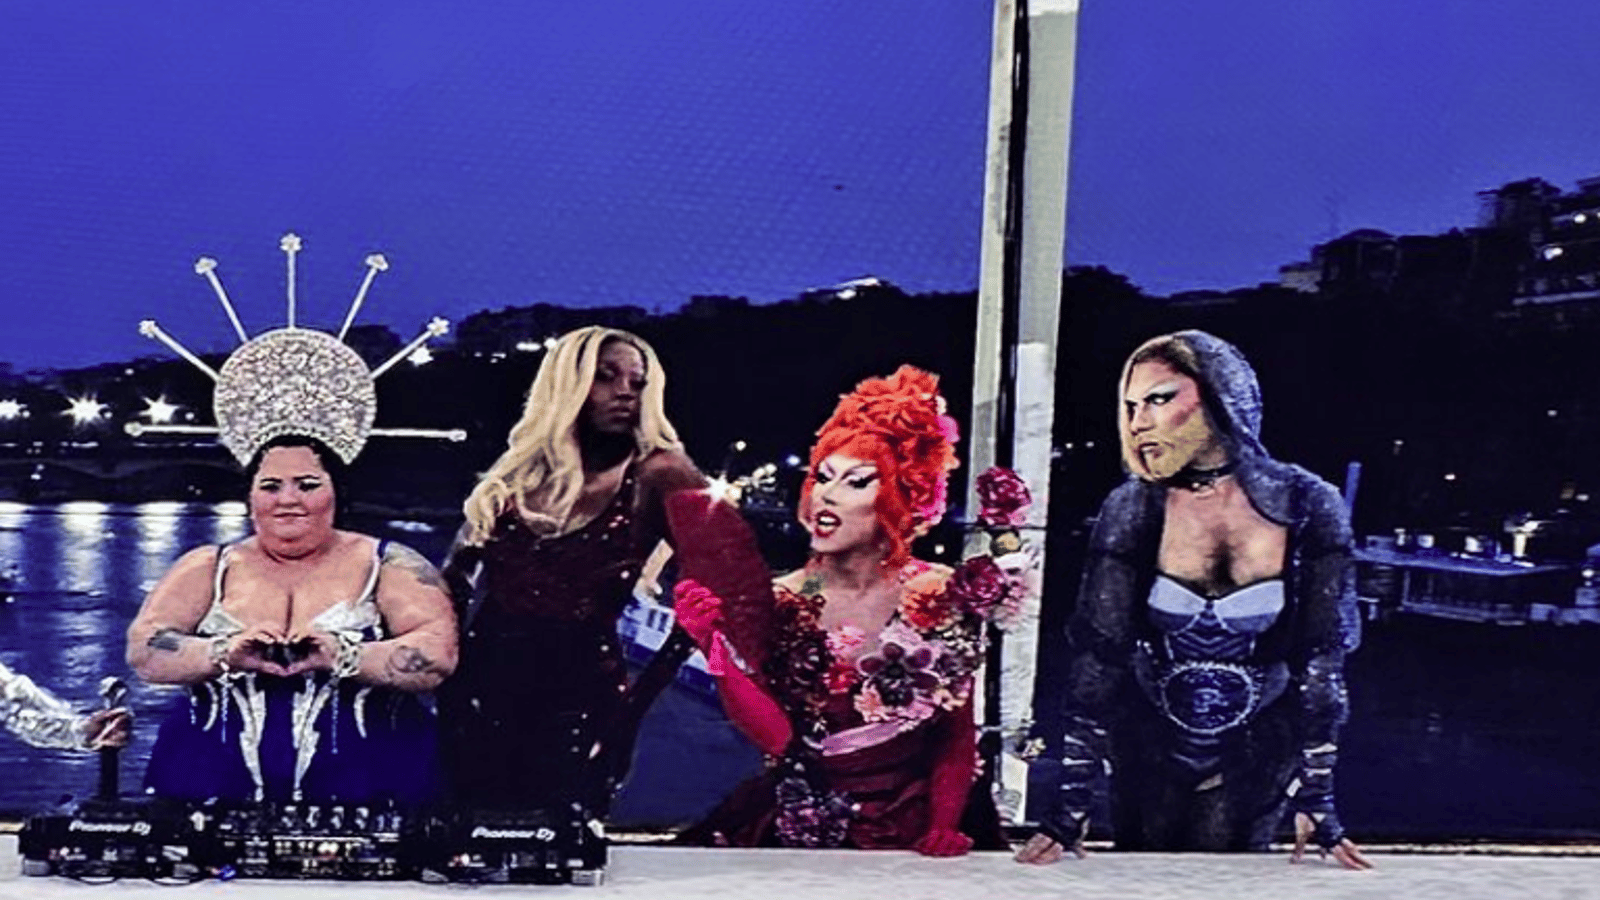 La présence de drag queens à la cérémonie d'ouverture des JO provoque une tonne de réactions